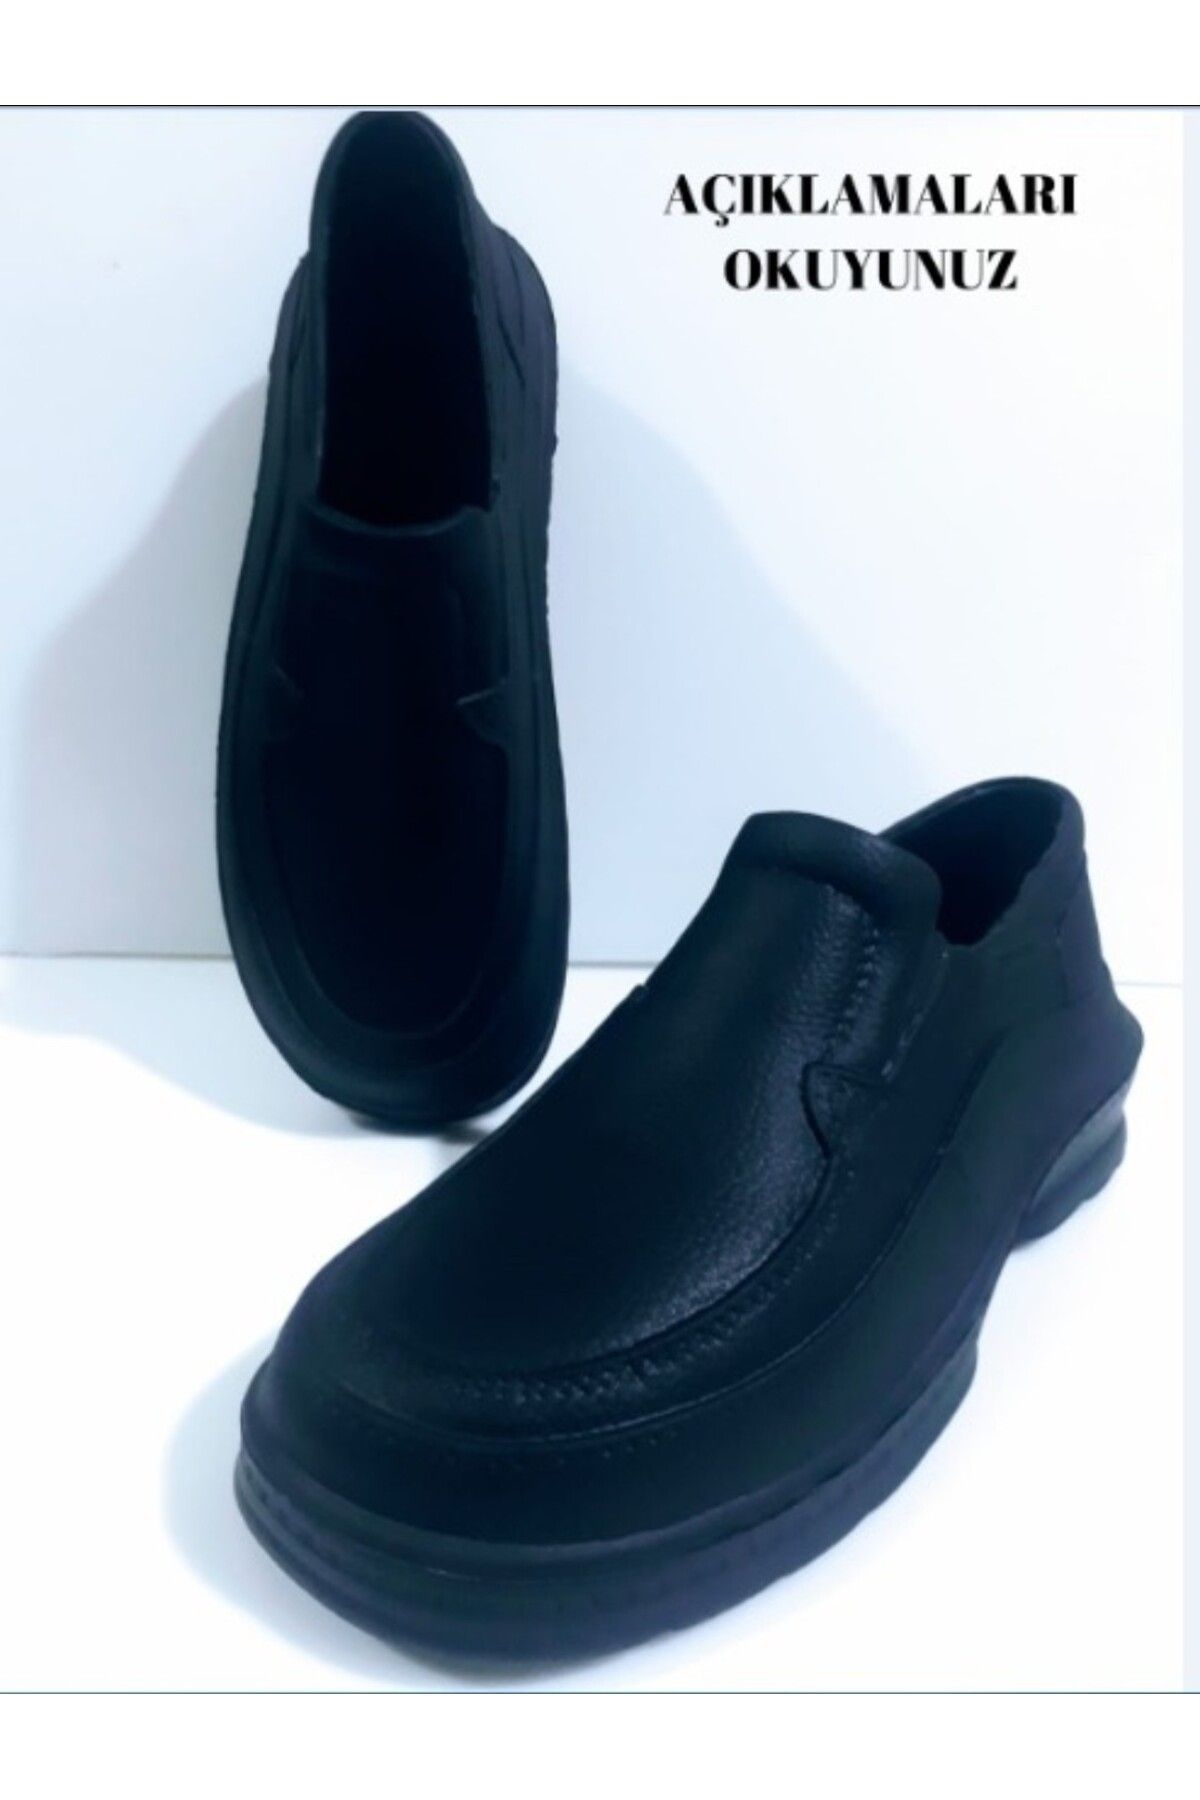 ALAABO Plastik Ayakkabı - Erkek Plastik Hafif Rahat Su Geçirmez Ucuz Günlük, Tarla, Bağ-bahçe Iş Ayakkabısı